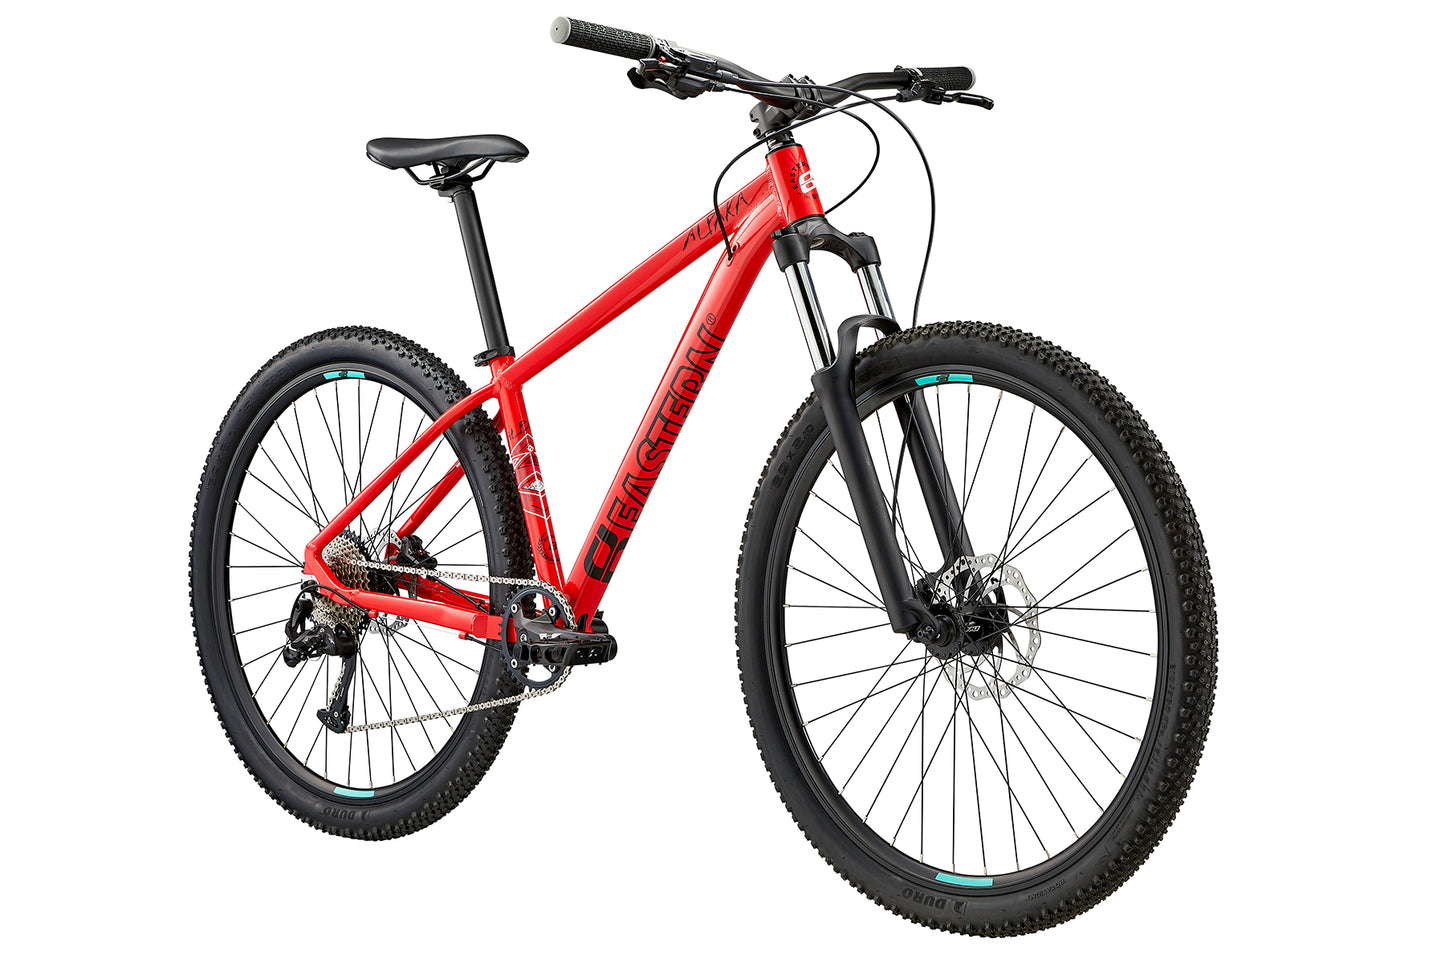 Eastern Alpaka 29 MTB Hardtail Bike - Red